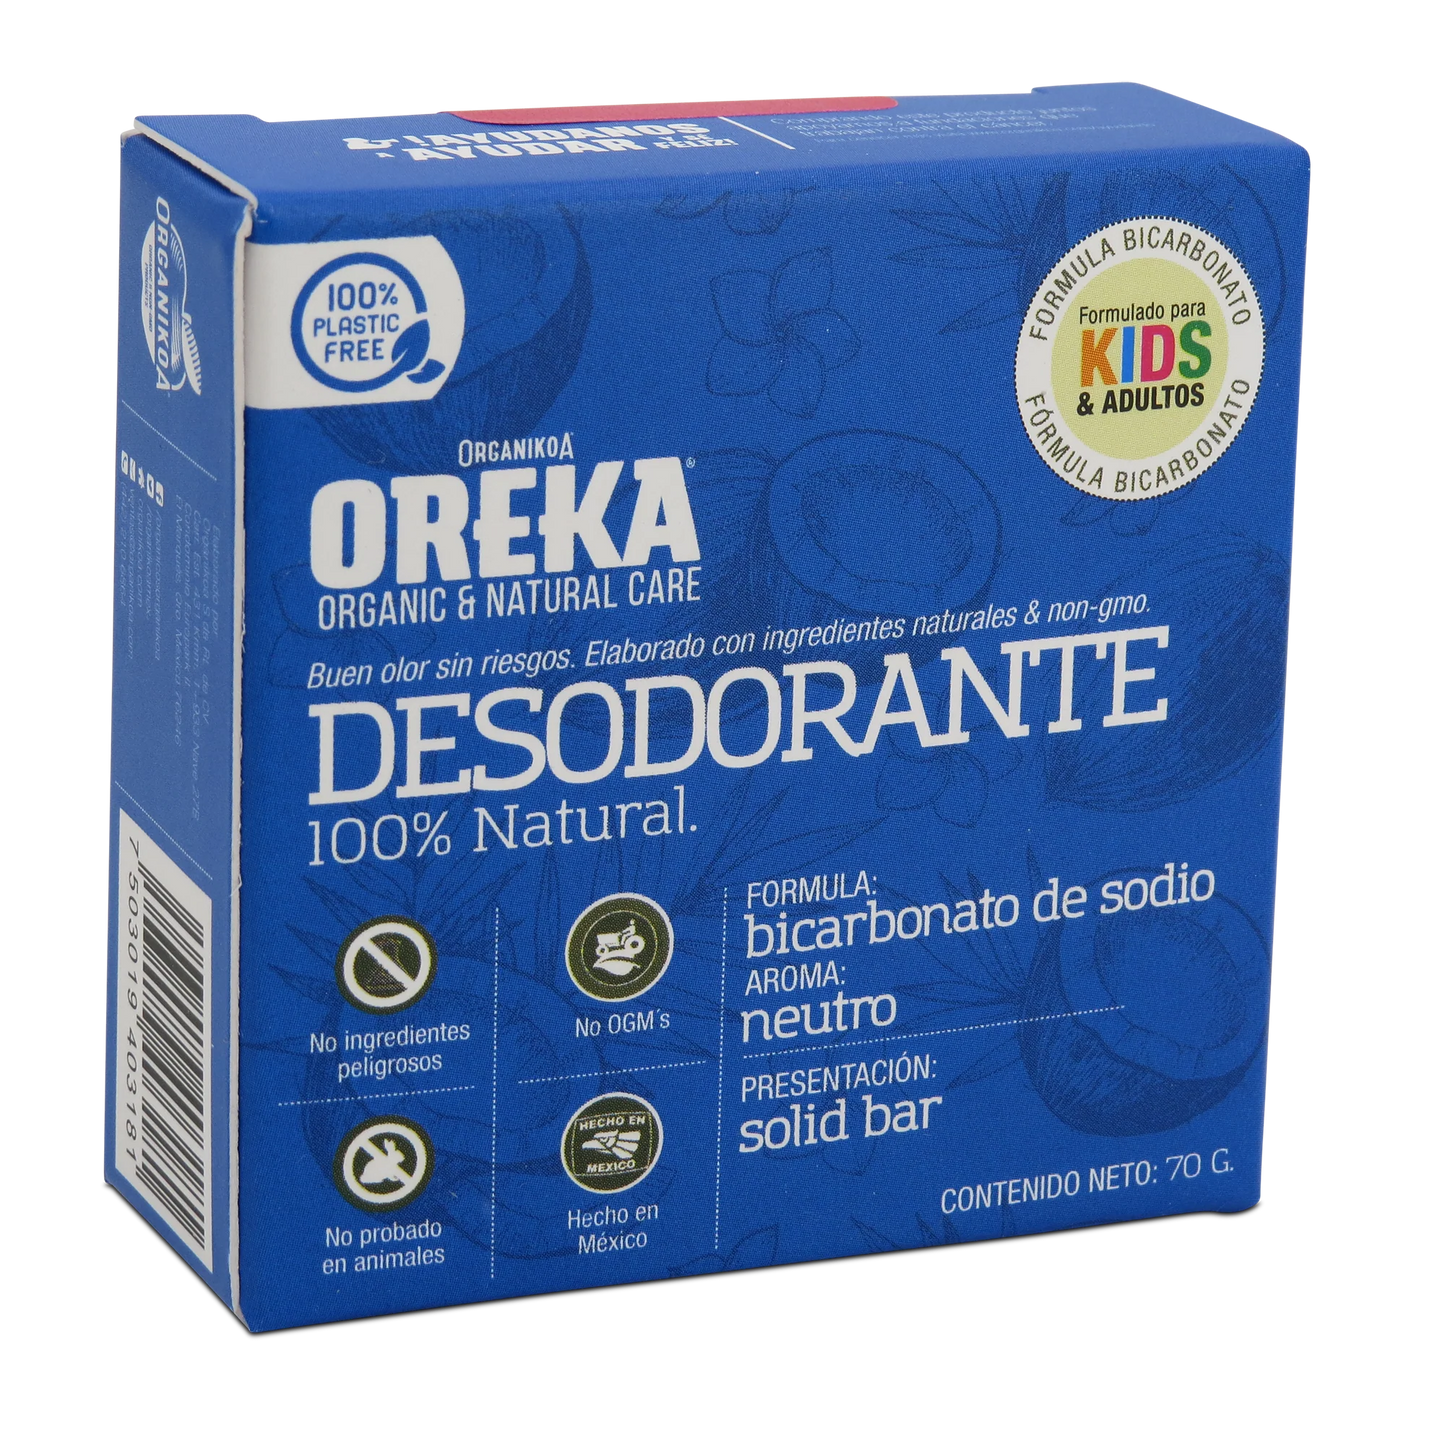 Desodorante sin químicos 100% Natural, con bicarbonato.